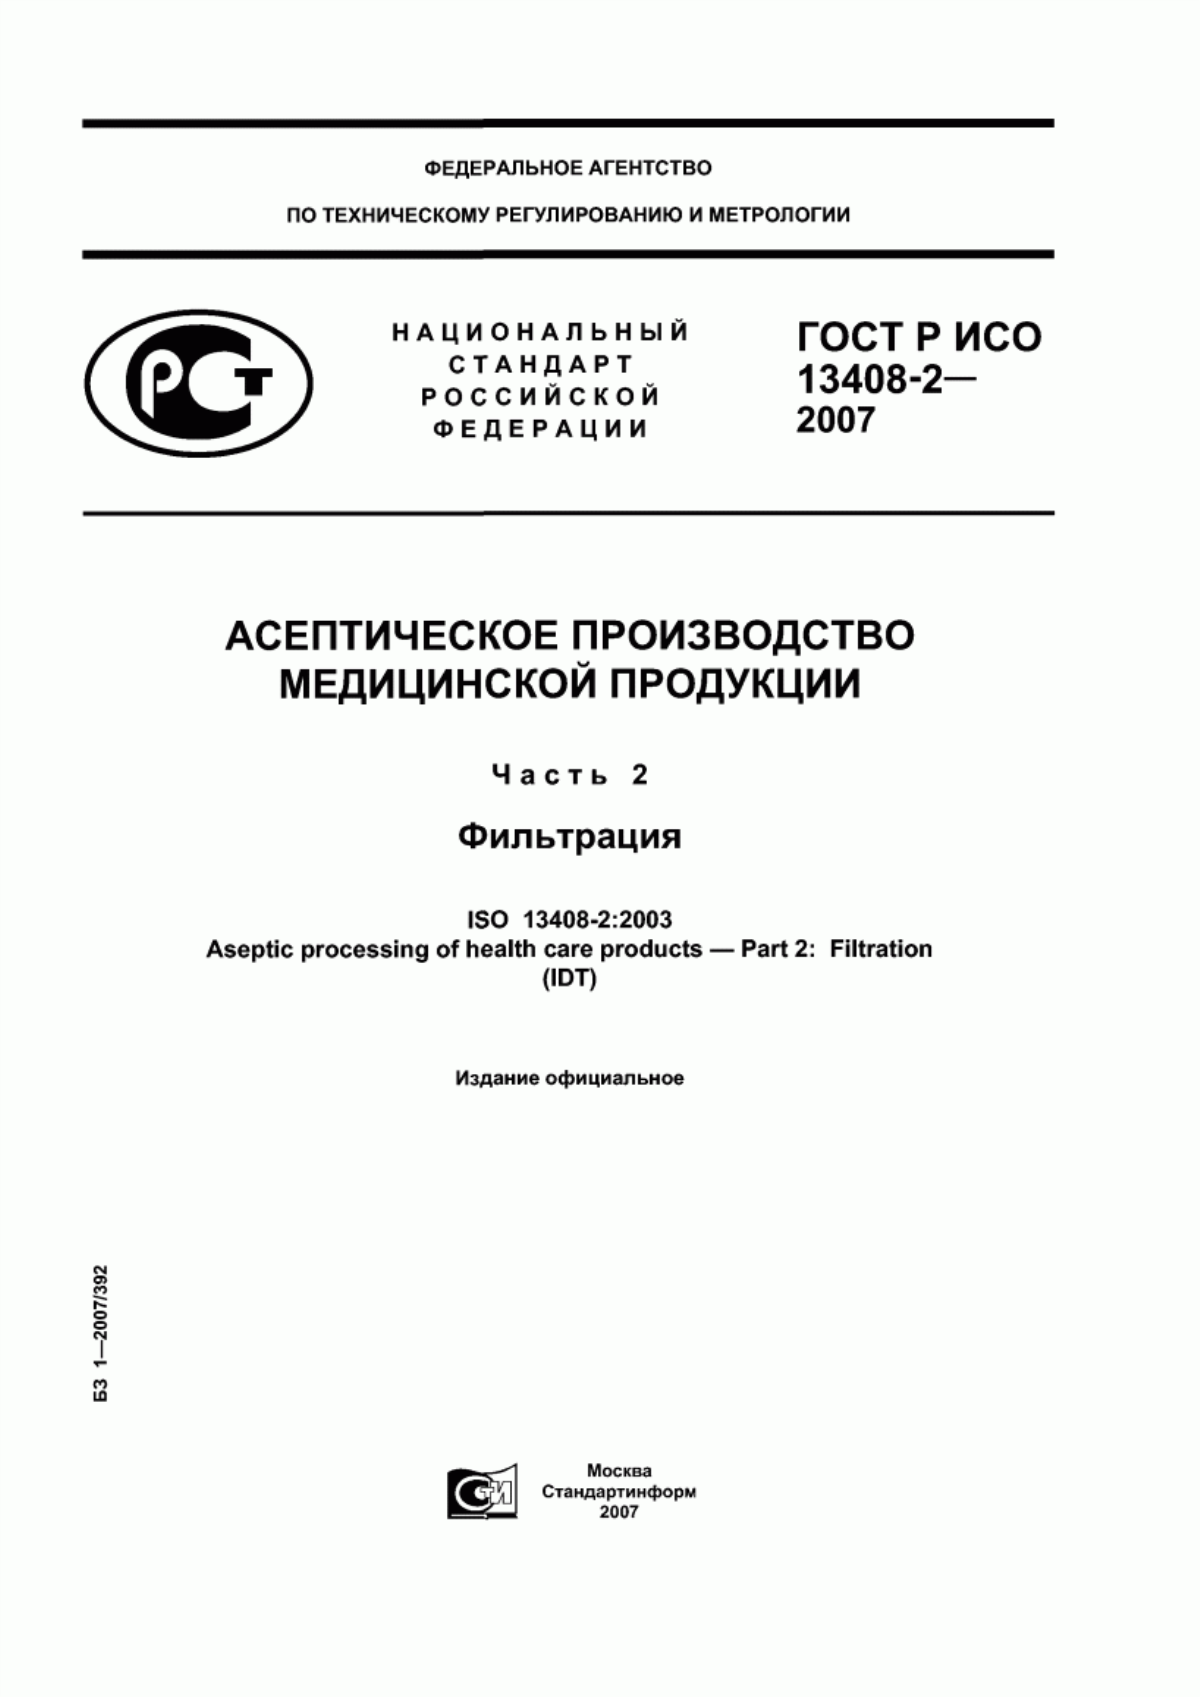 ГОСТ Р ИСО 13408-2-2007 Асептическое производство медицинской продукции. Часть 2. Фильтрация